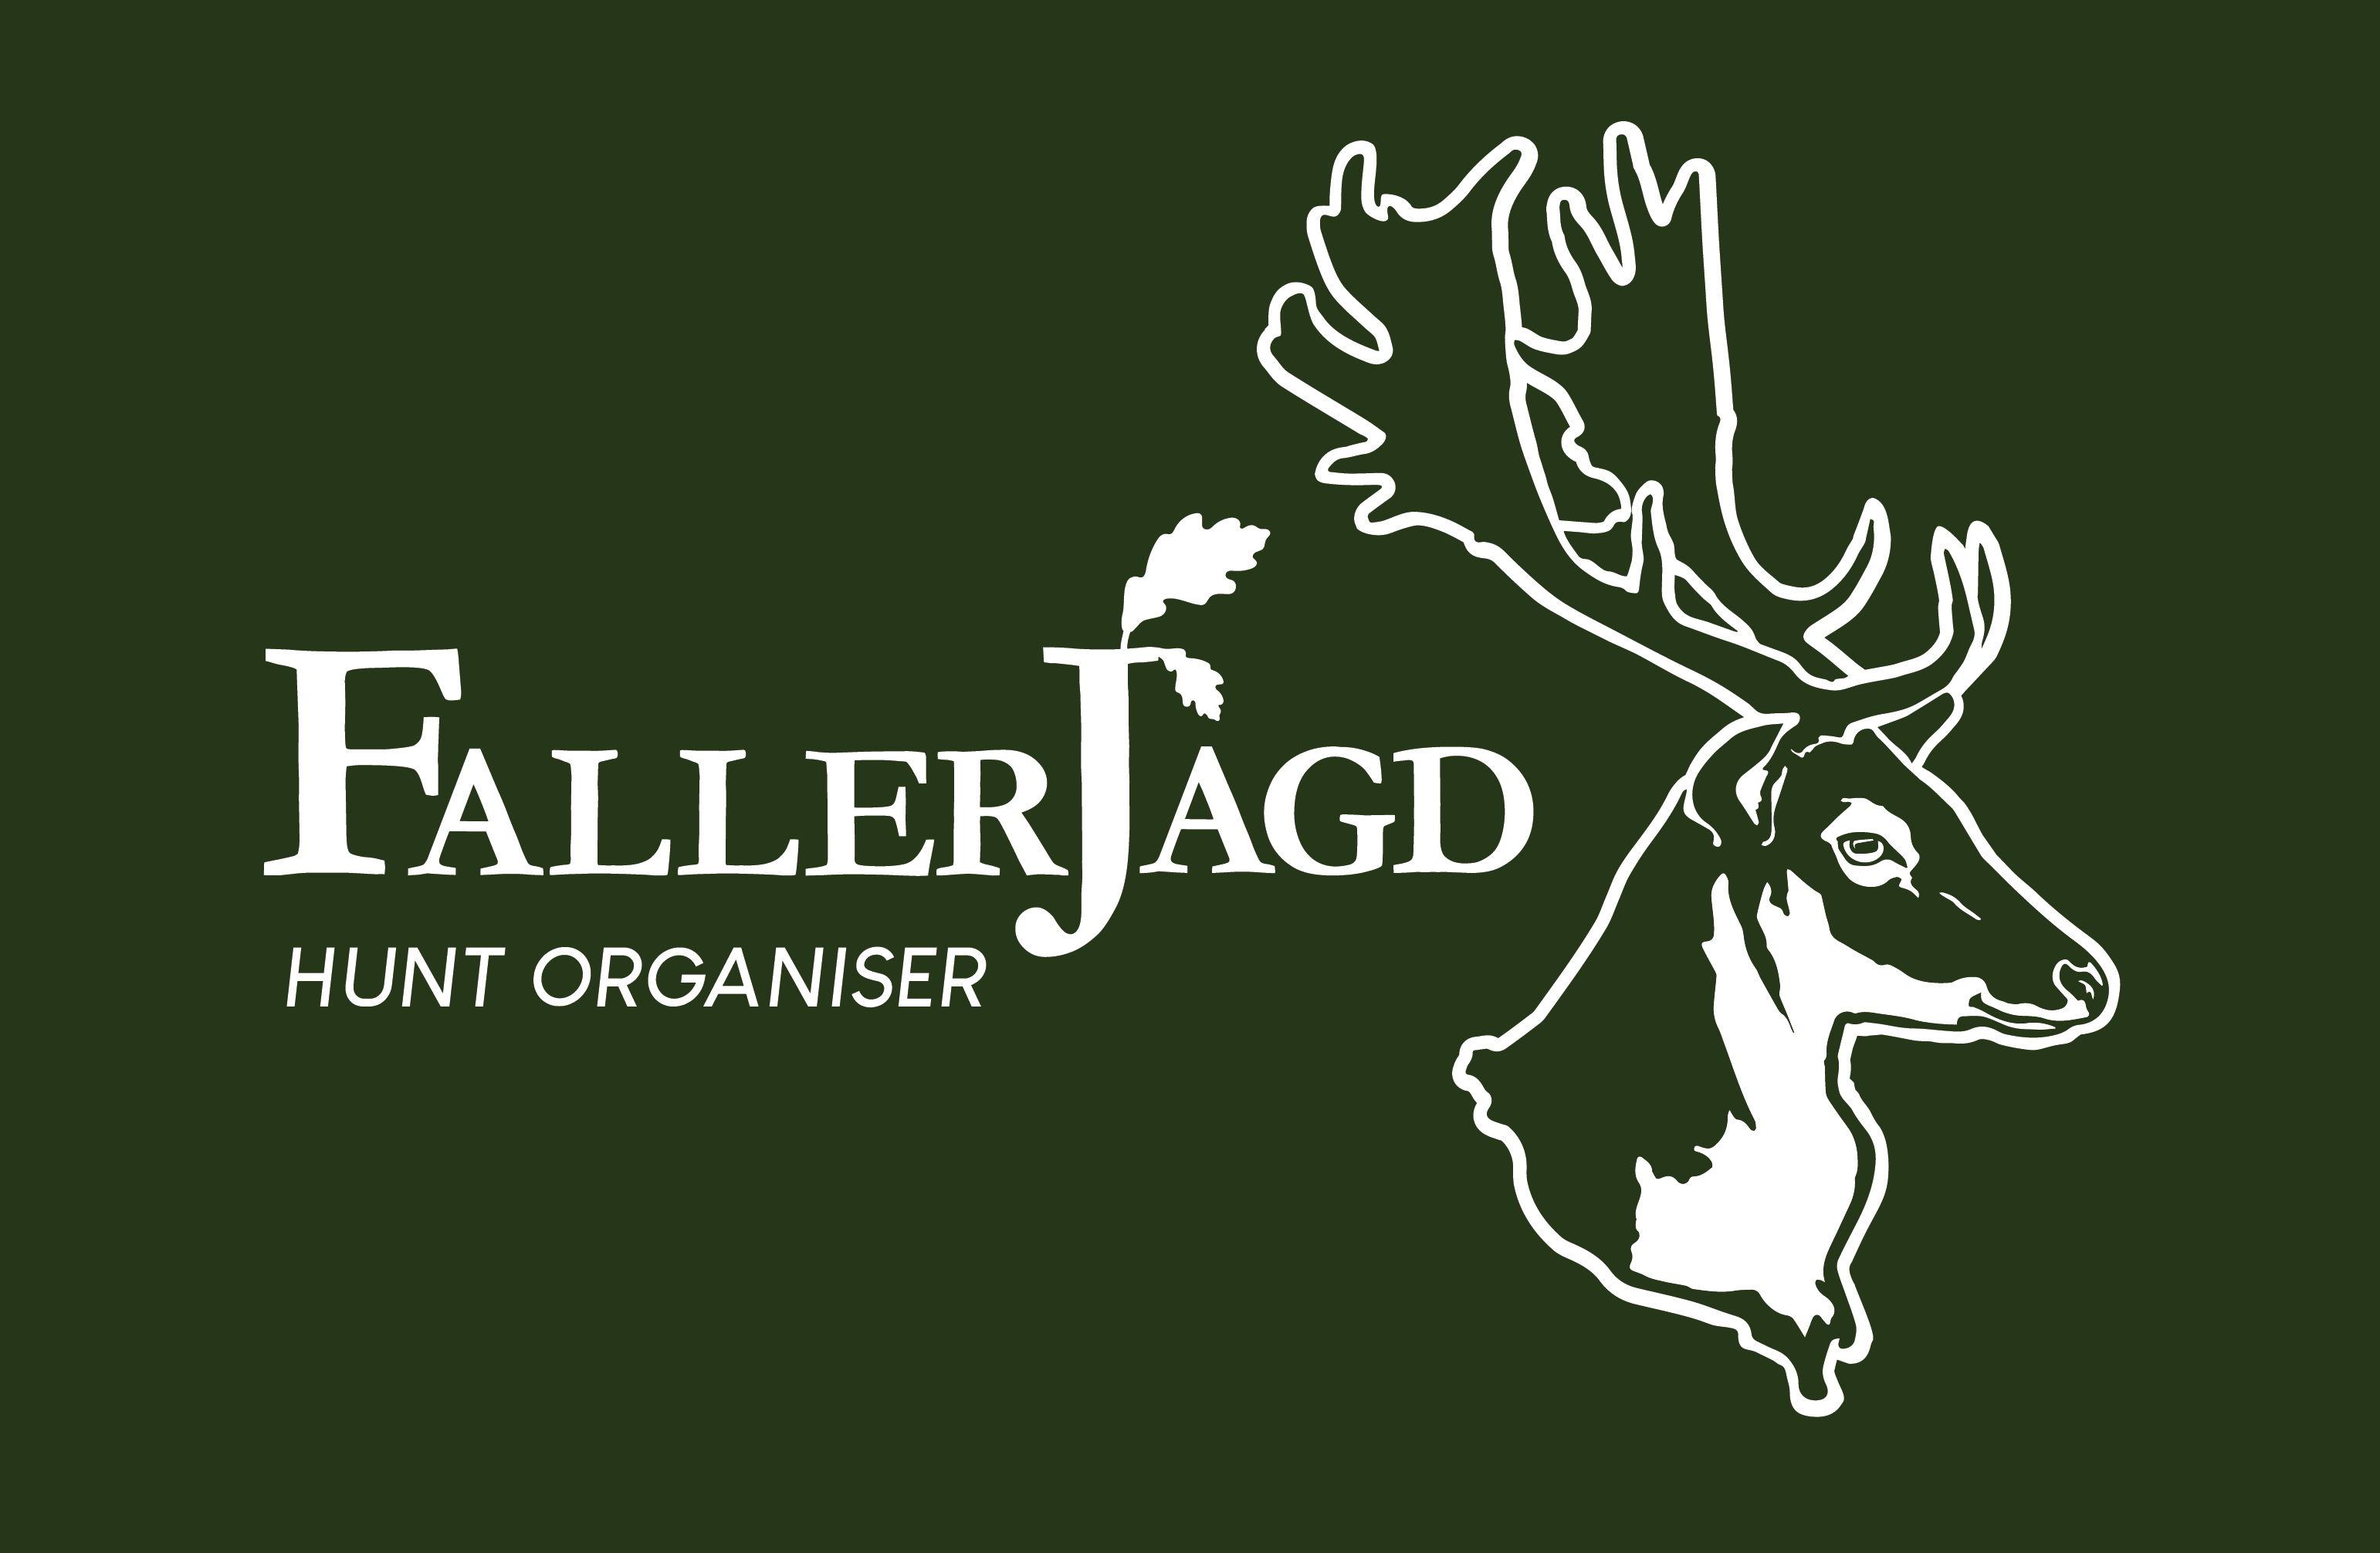 Faller Jagd Ungarn - Jagdorganisation